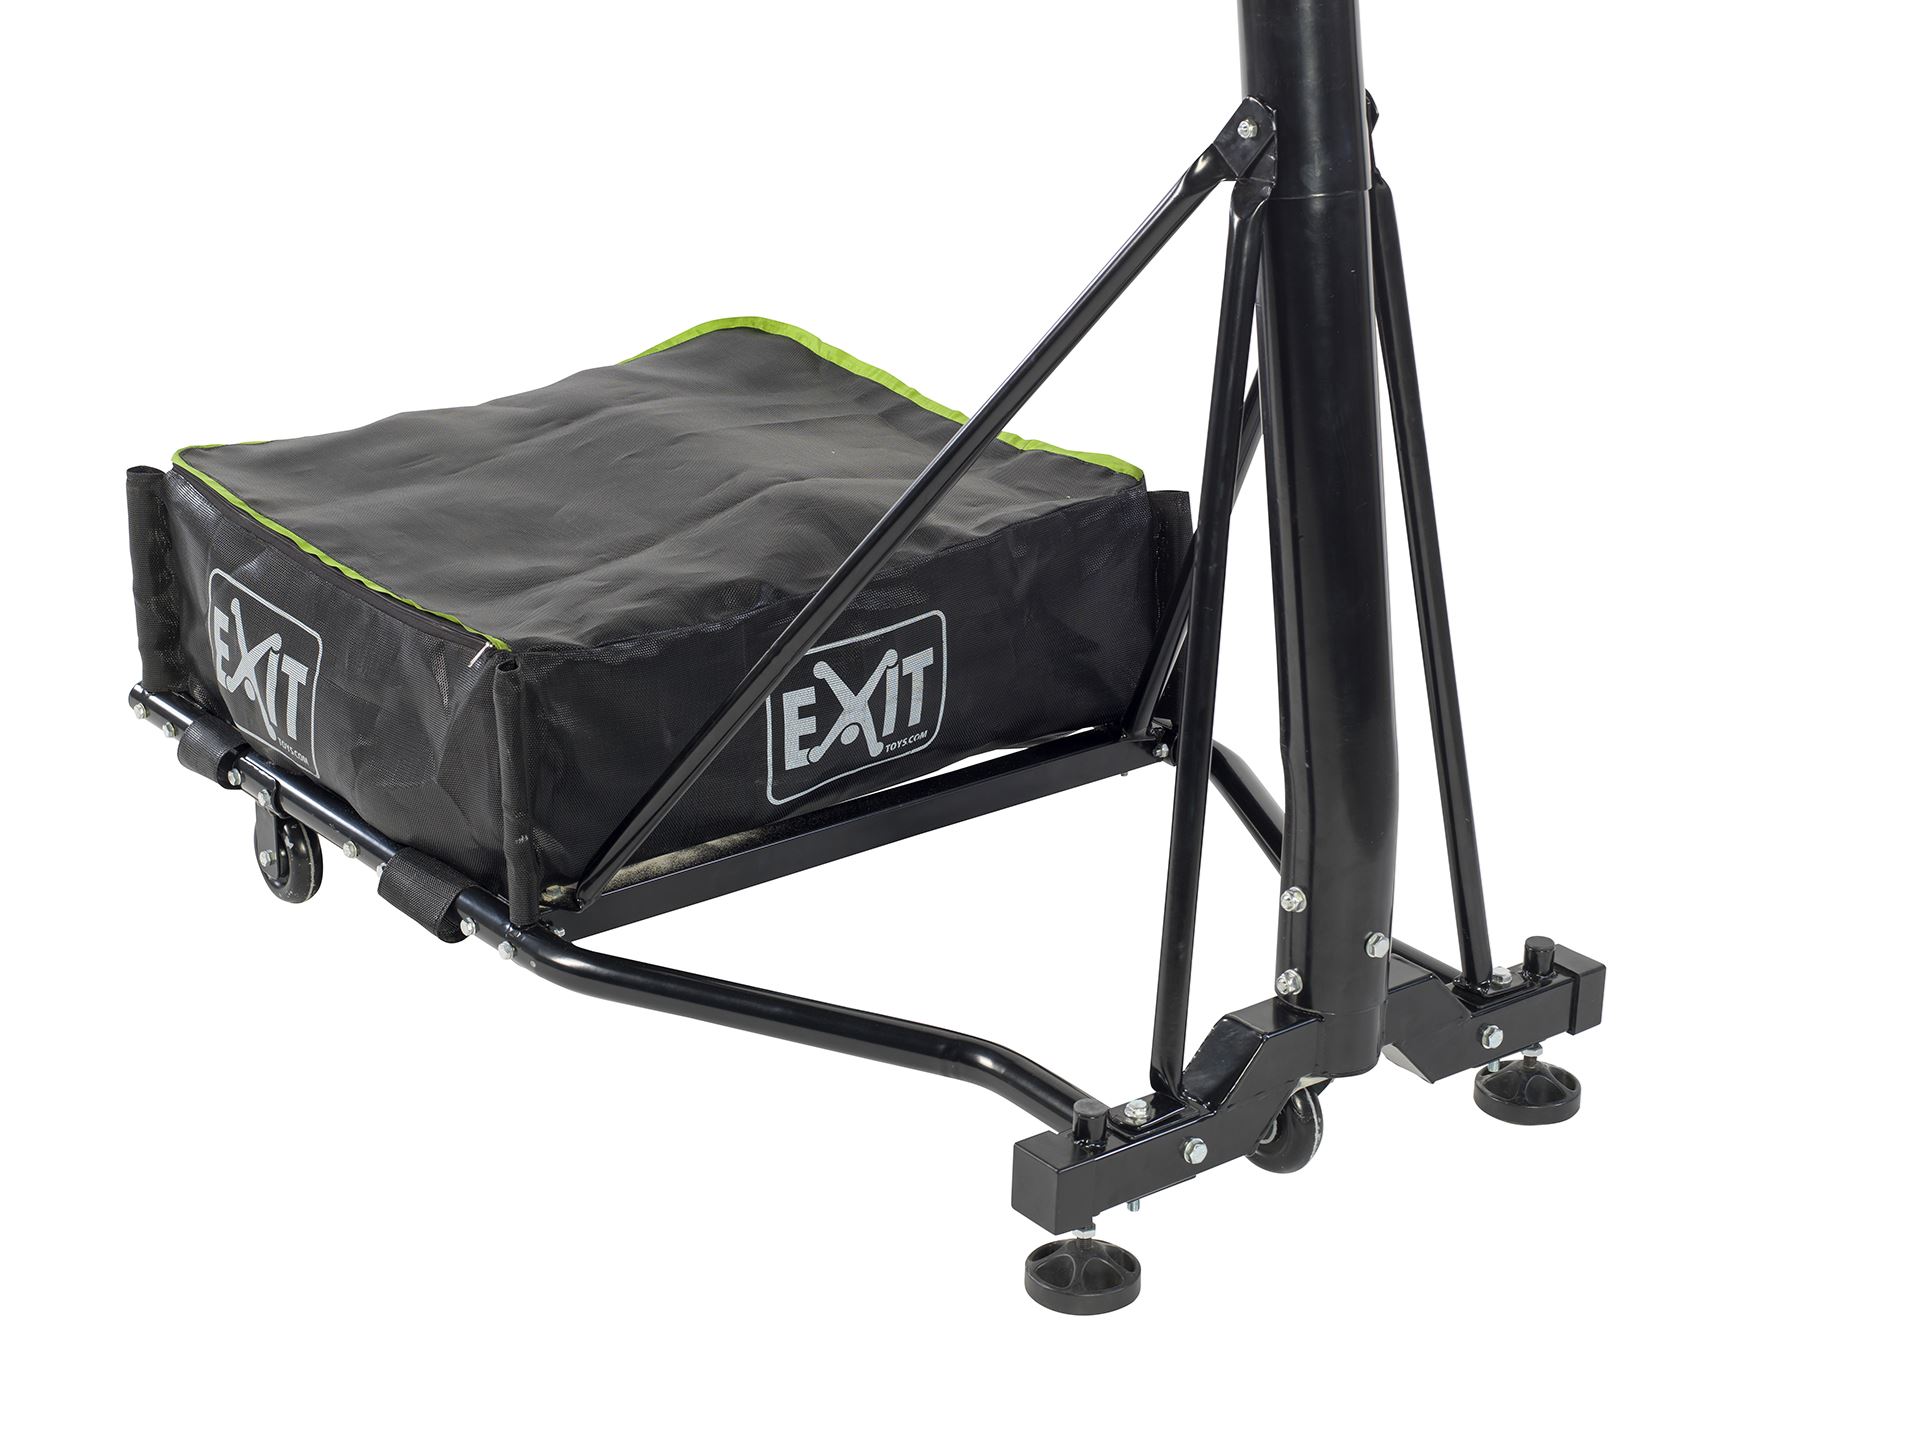 EXIT-Galaxy-verplaatsbaar-basketbalbord-op-wielen-met-dunkring-groen-zwart